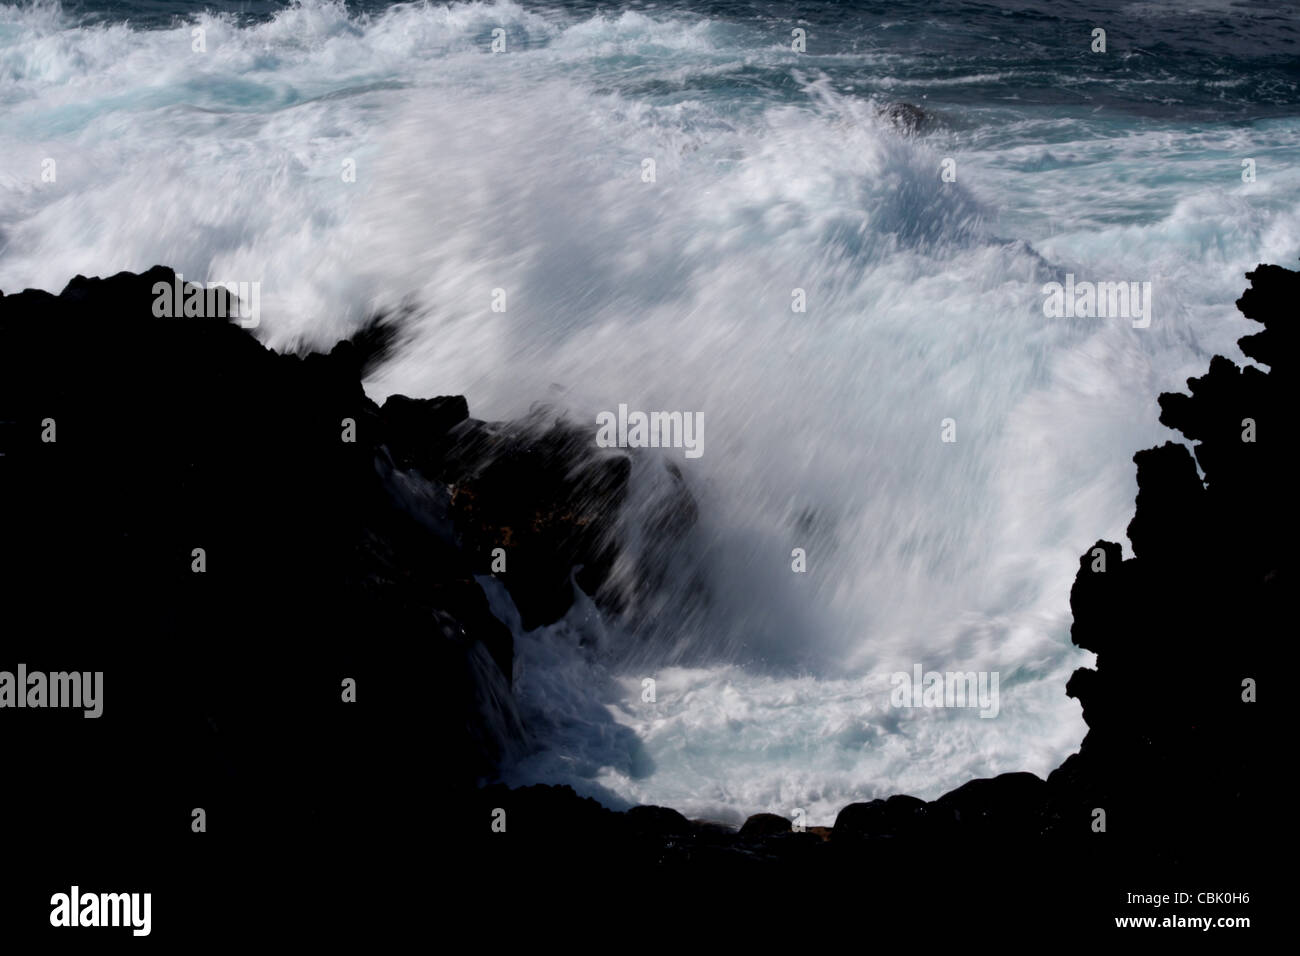 Esplosivi onde da surf Hawaii Foto Stock